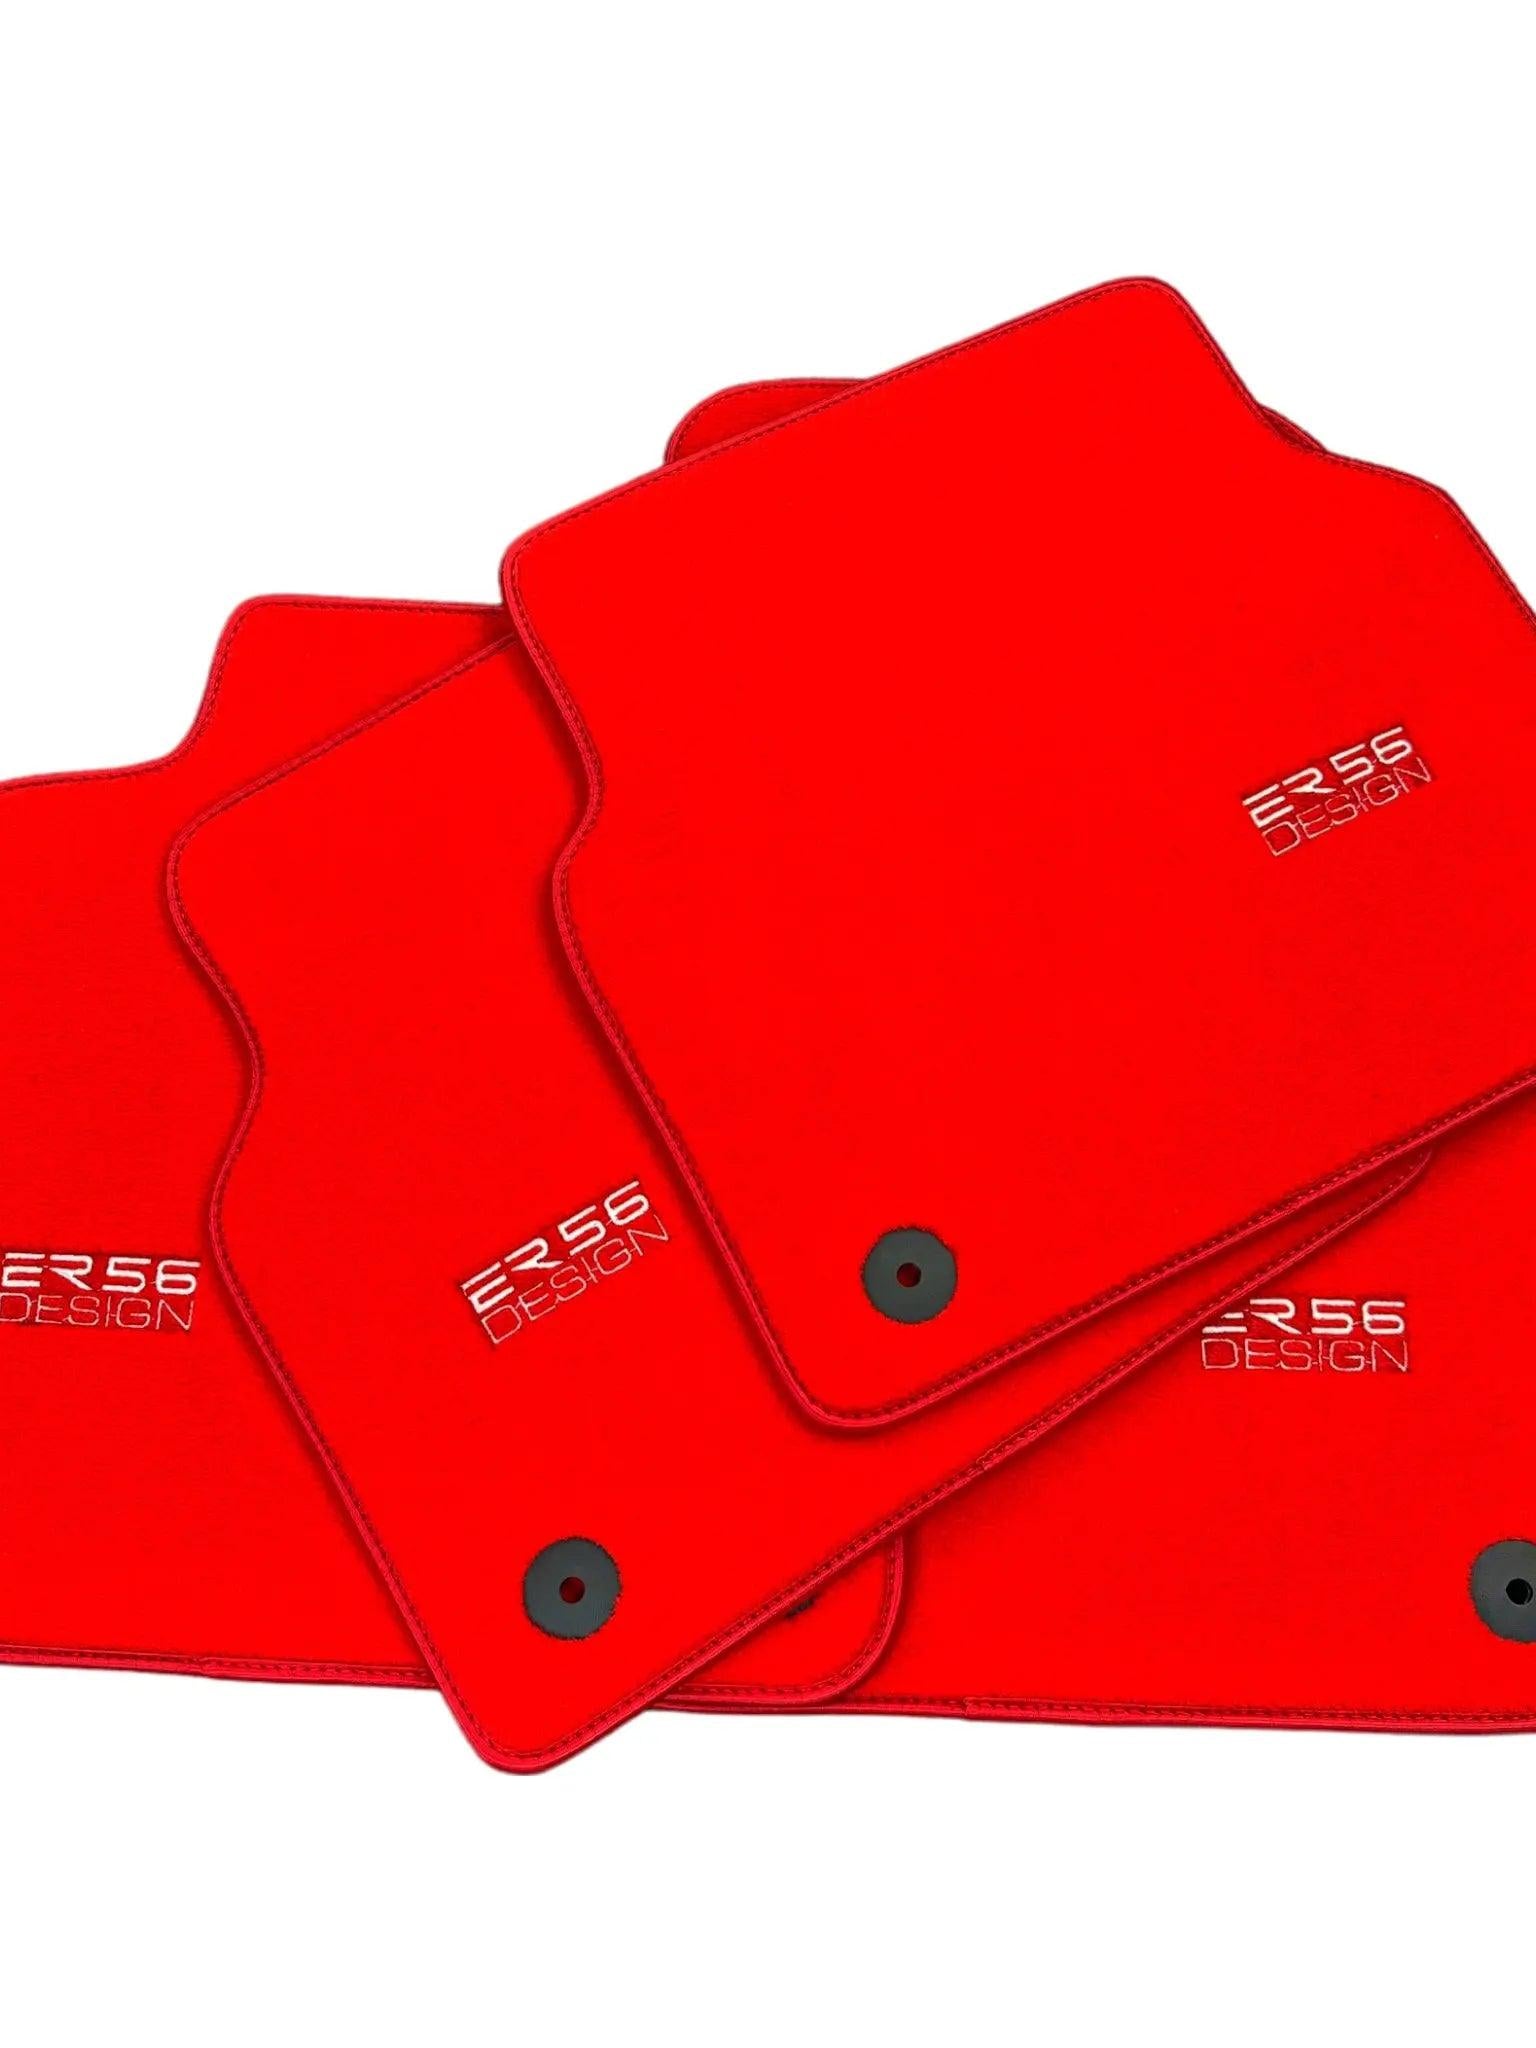 Red Floor Mats for Audi A4 - B7 Sedan (2005-2008) | ER56 Design